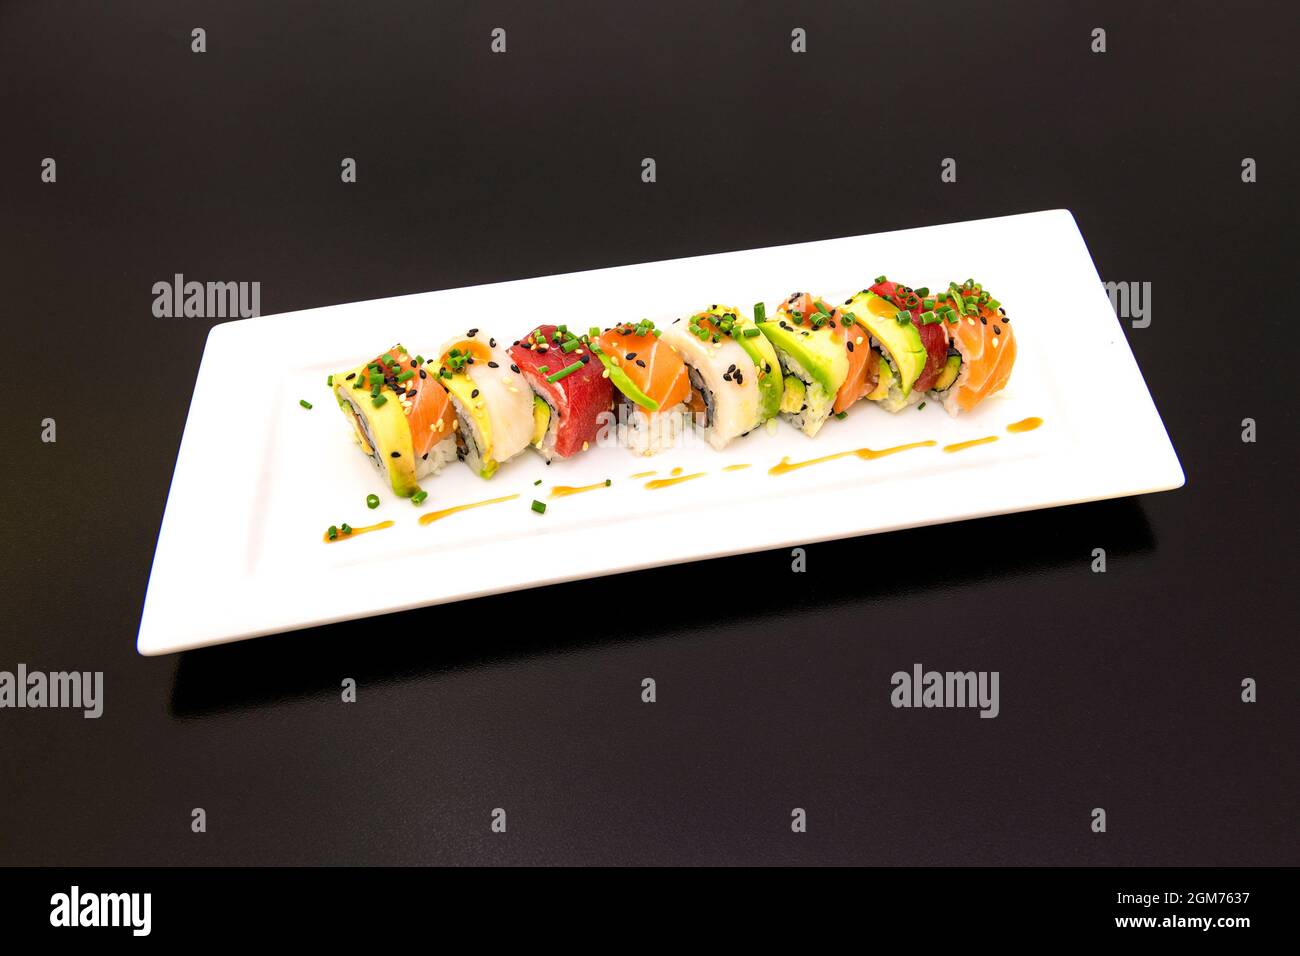 L'uramaki arc-en-ciel avec de l'avocat mûr, du saumon mariné, du thon rouge, de la ciboulette et du poisson-beurre avec de la sauce épicée au soja Banque D'Images